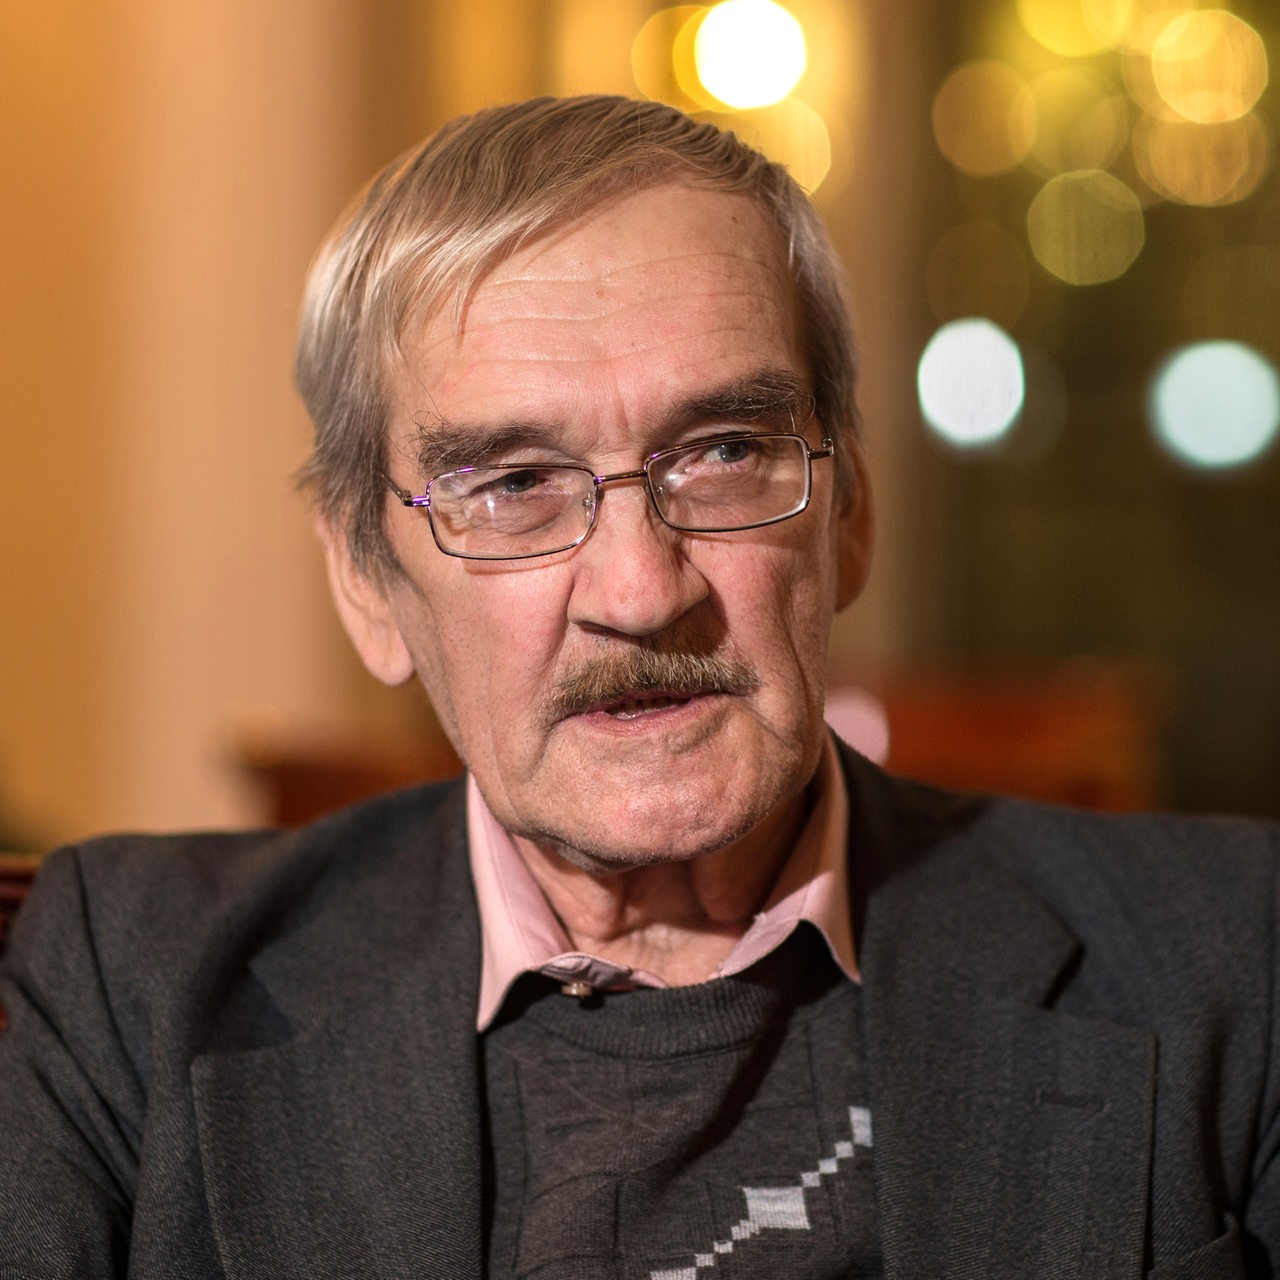 Stanislaw Petrow, ehemaliger Ingenieur im Dienst der Sowjetarmee, sitzt am 15.02.2013 in einem Hotel in Dresden (Sachsen). 